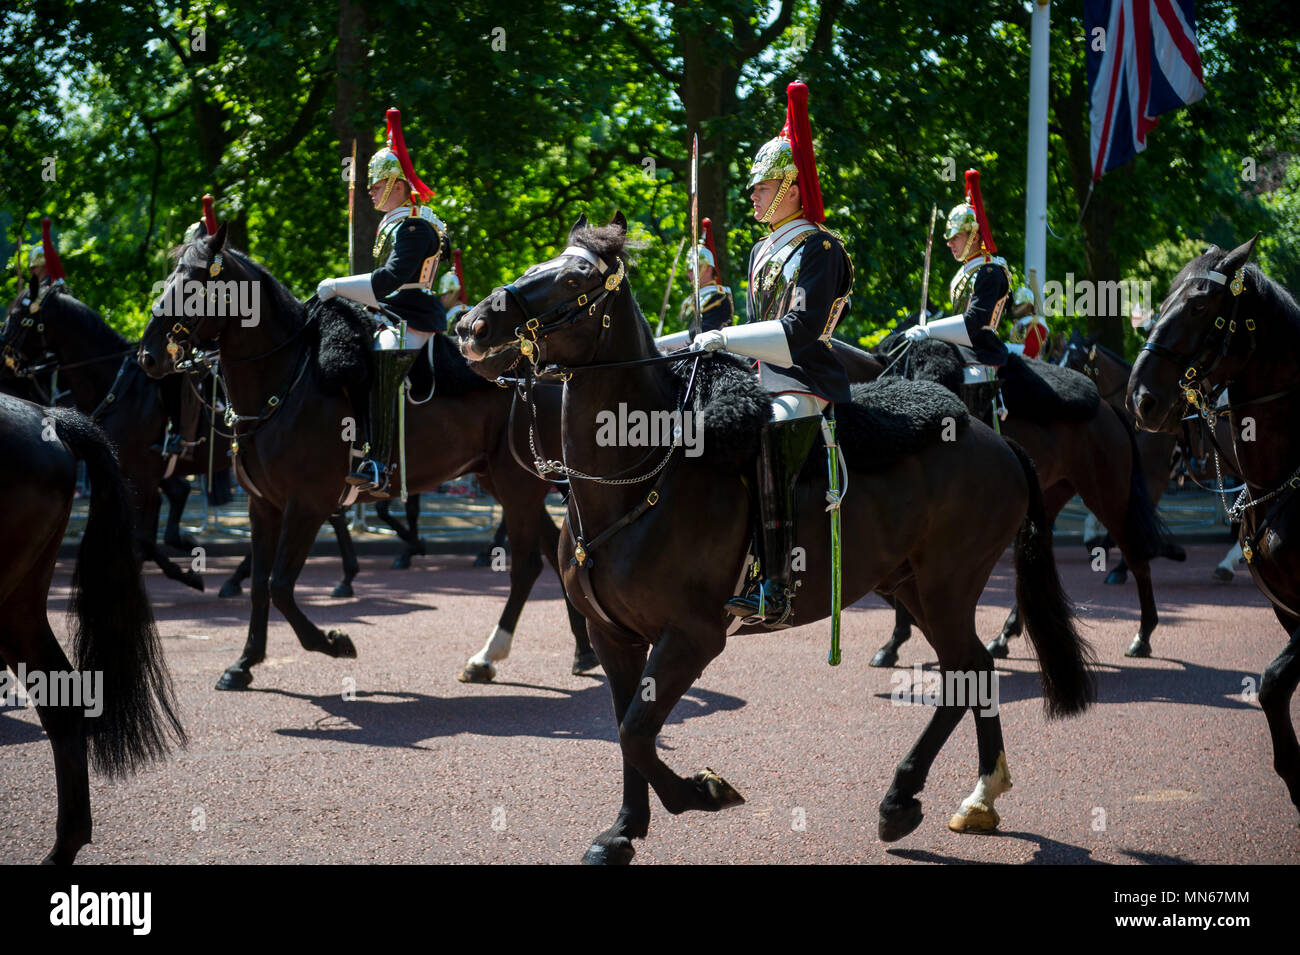 Londra - 17 giugno 2017: Guardia Reale della famiglia calvario a cavallo vestito in uniforme cerimoniale passare giù il Mall. Foto Stock